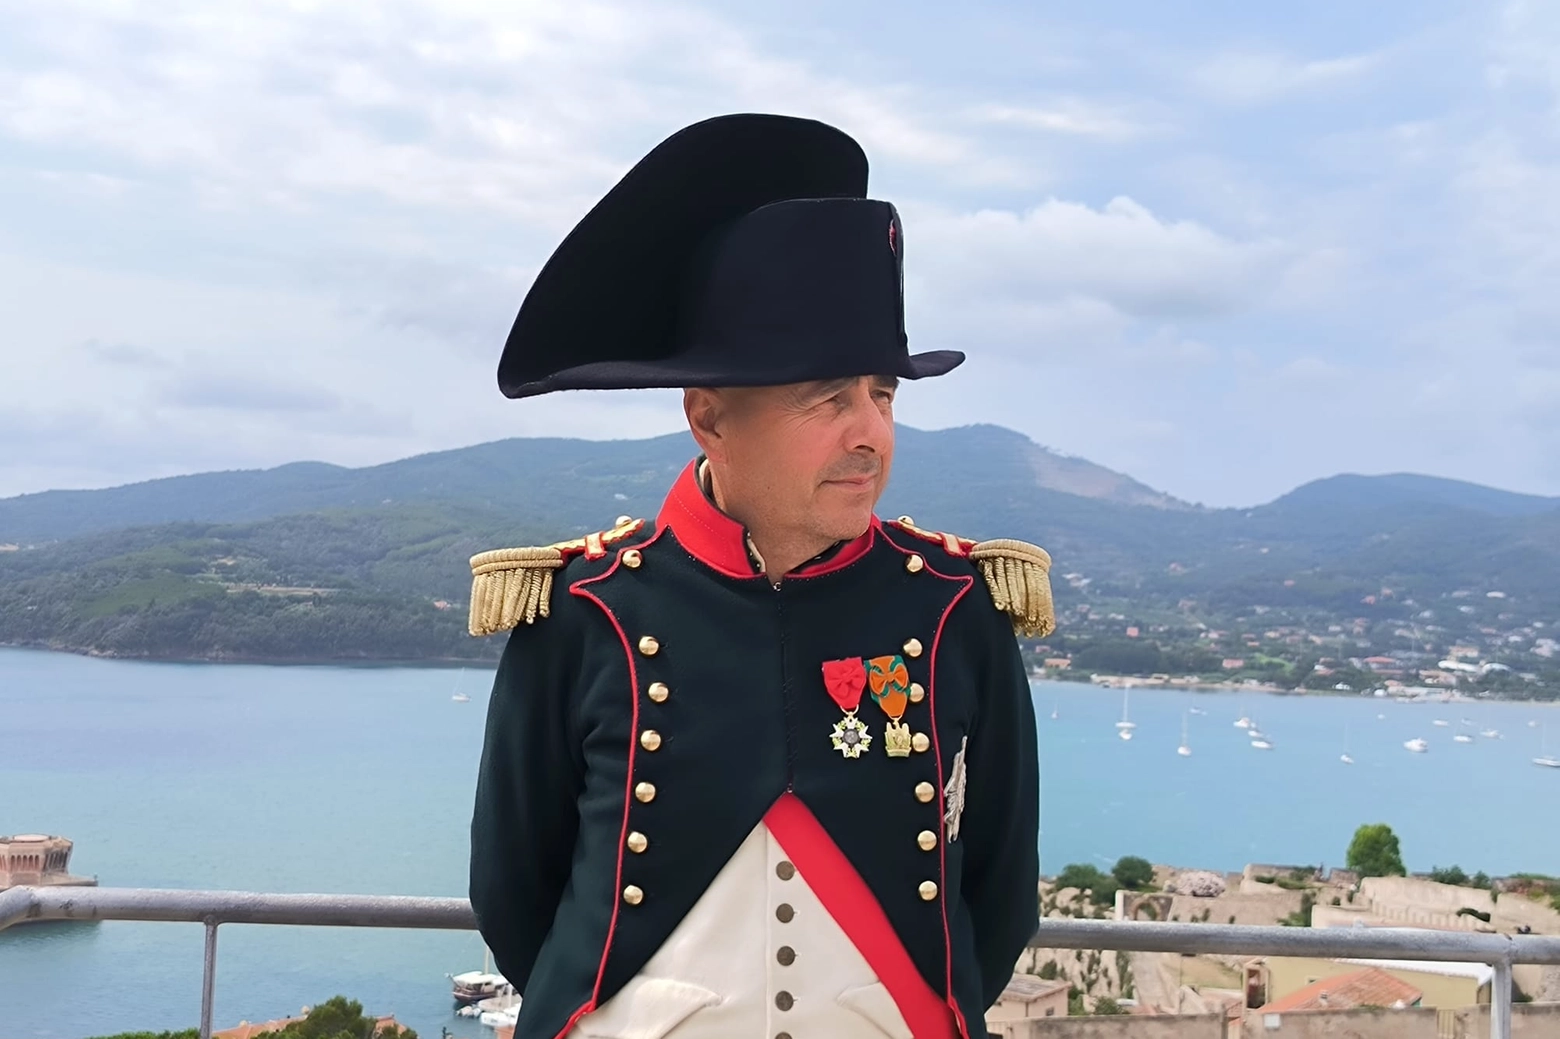 Luca Bellosi nelle vesti di Napoleone Bonaparte all'isola d'Elba (Foto di Valerie Pizzera)